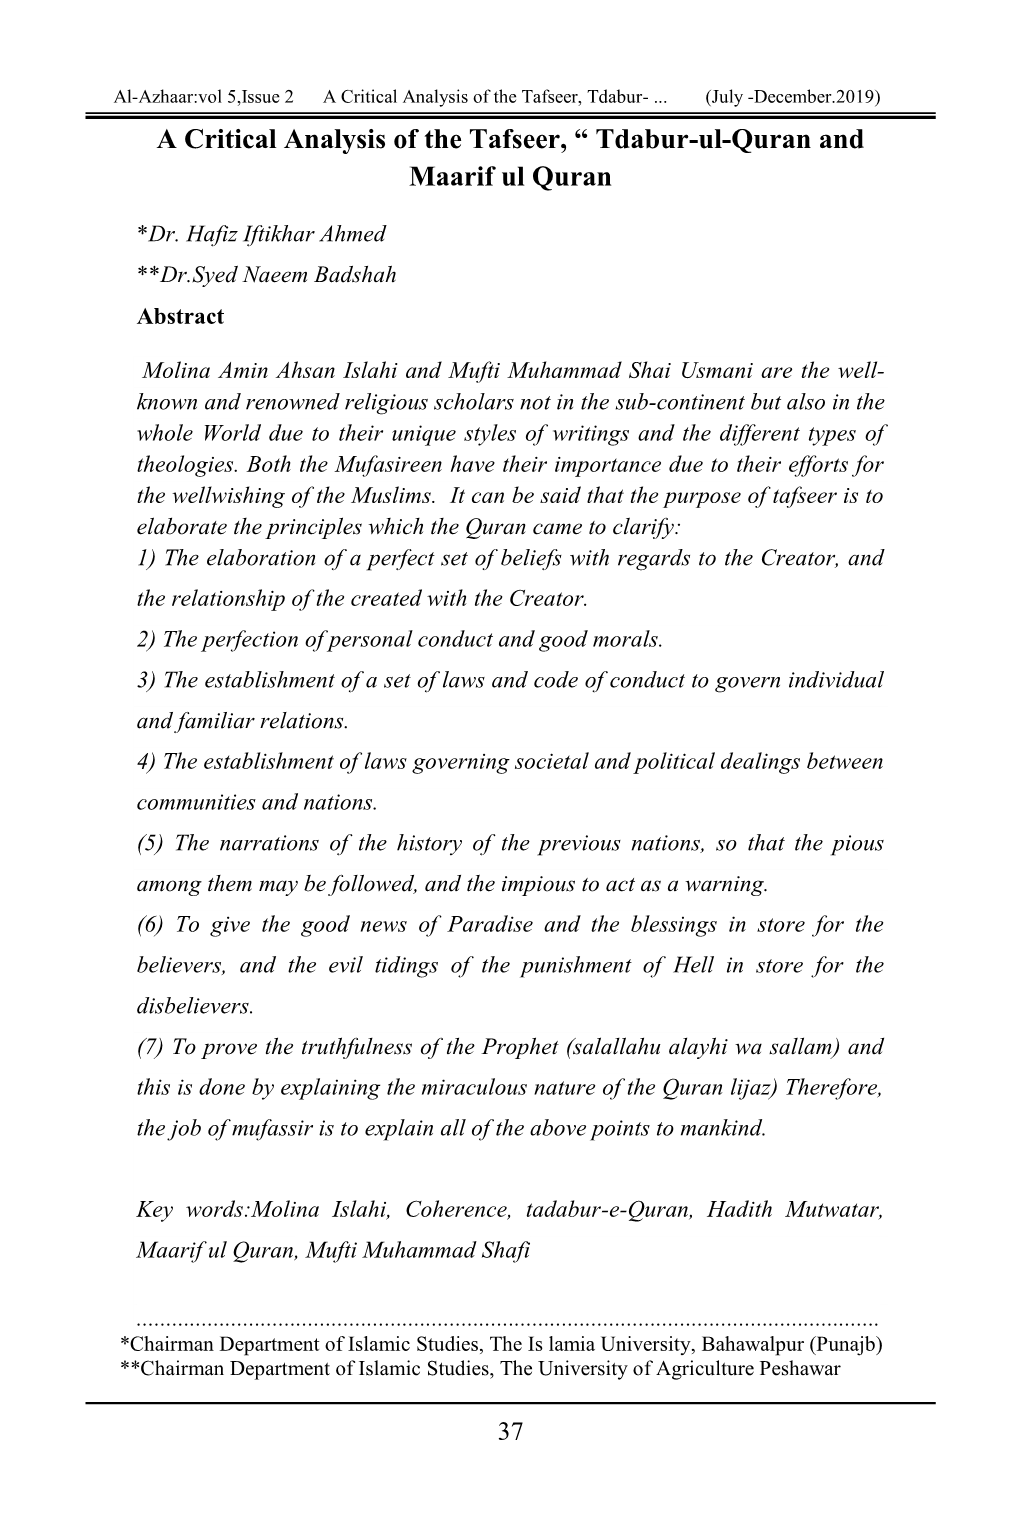 A Critical Analysis of the Tafseer, “ Tdabur-Ul-Quran and Maarif Ul Quran